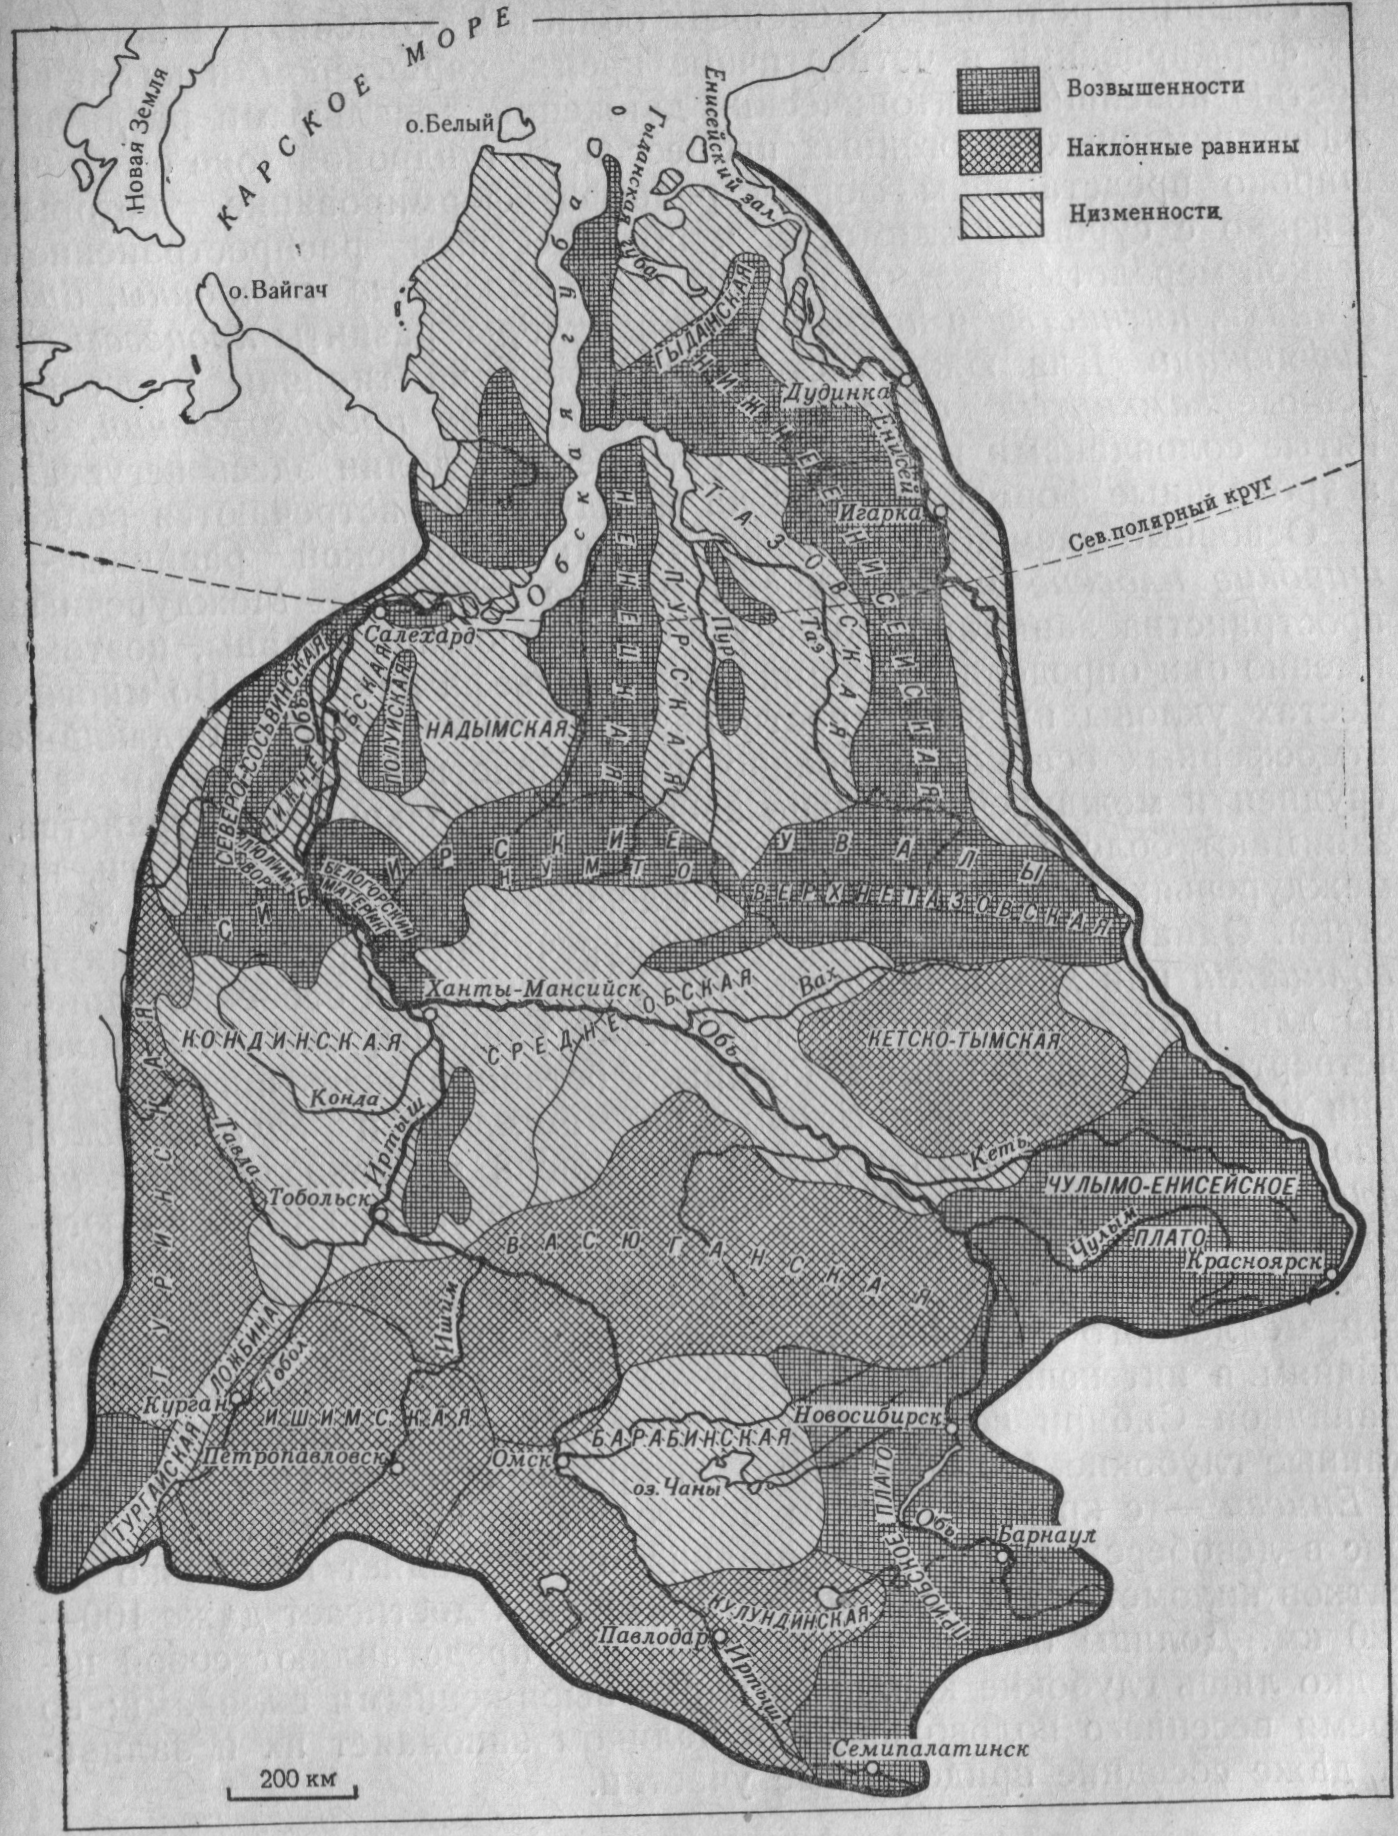 Формы рельефа западной сибири на контурной карте